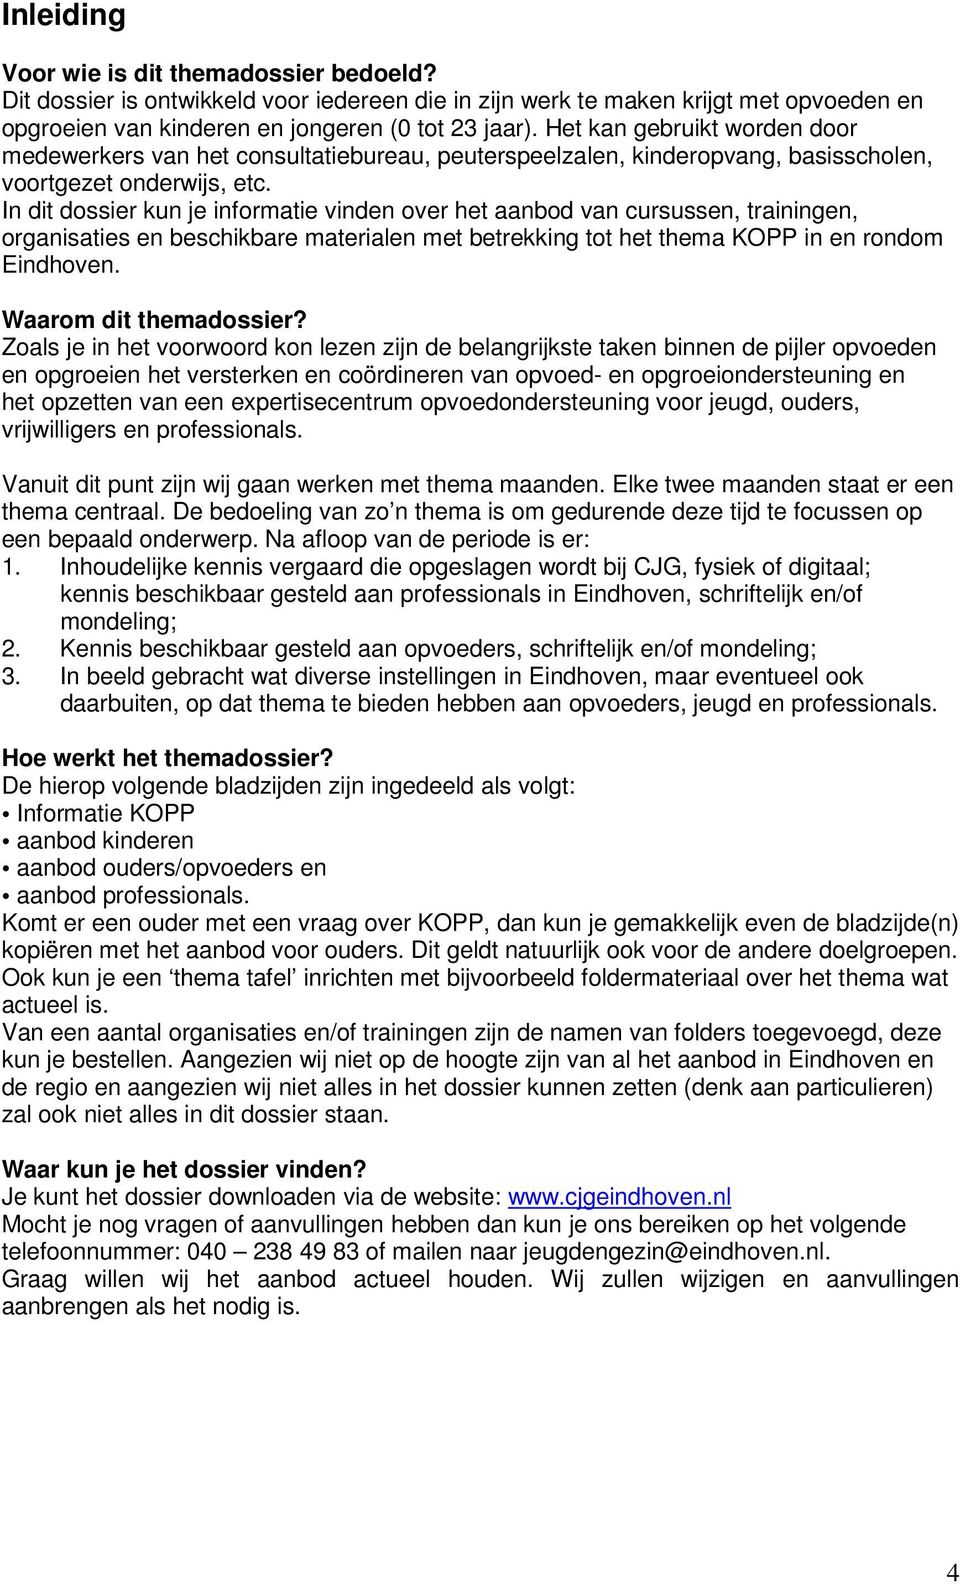 In dit dossier kun je informatie vinden over het aanbod van cursussen, trainingen, organisaties en beschikbare materialen met betrekking tot het thema KOPP in en rondom Eindhoven.